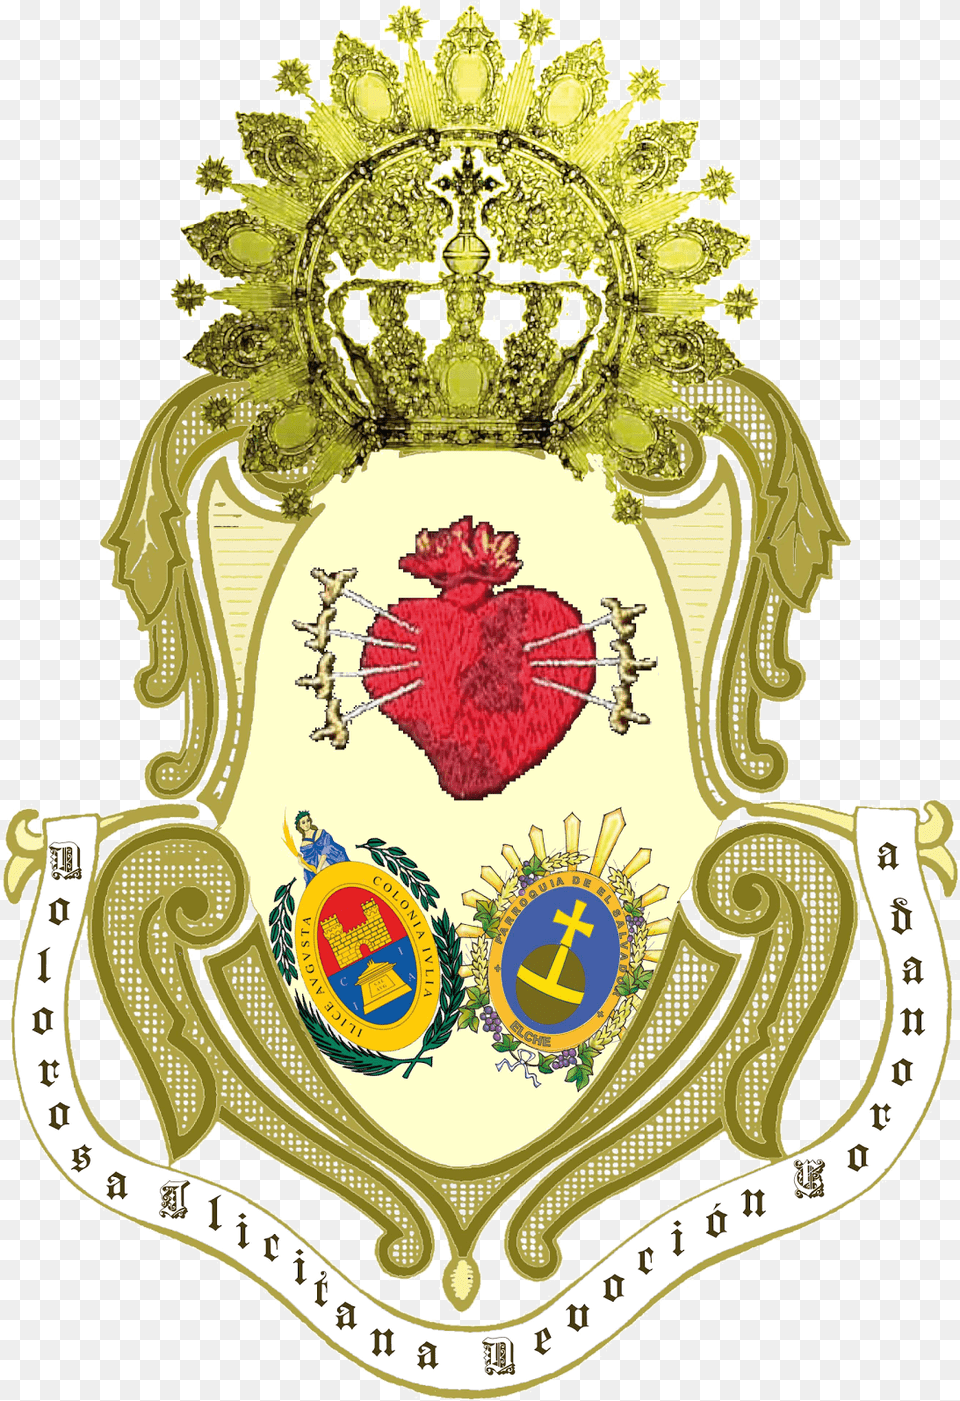 En El Escudo Aparecen Las Iconografas De Los Tres Ayuntamiento De Elche, Badge, Logo, Symbol, Emblem Free Png